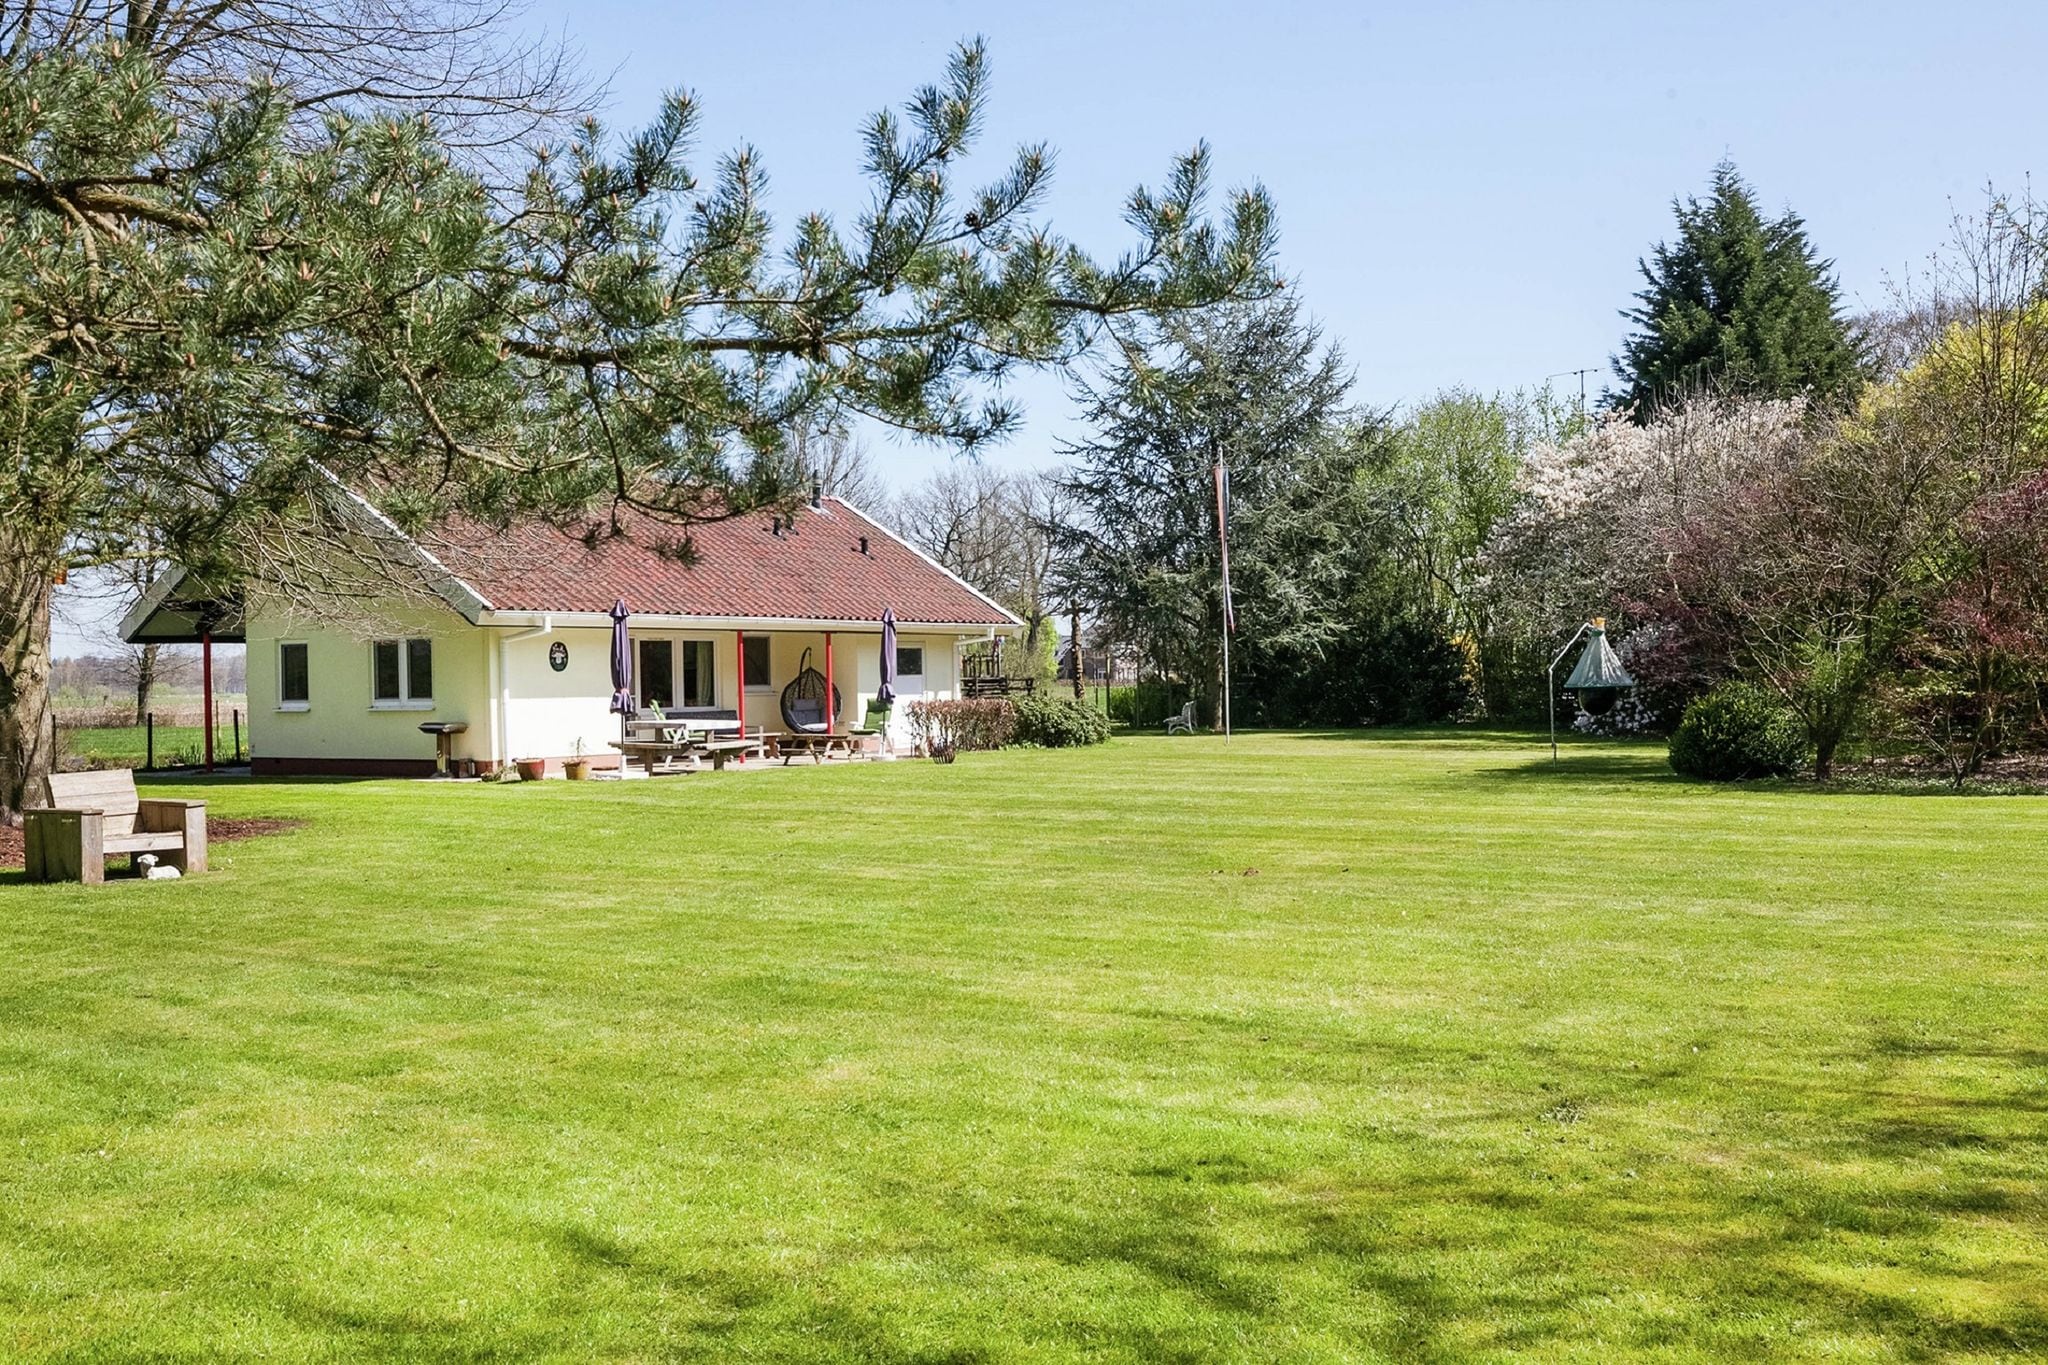 Maison indépendante avec un grand jardin clôturé, des équipements de jeux et une terrasse couverte